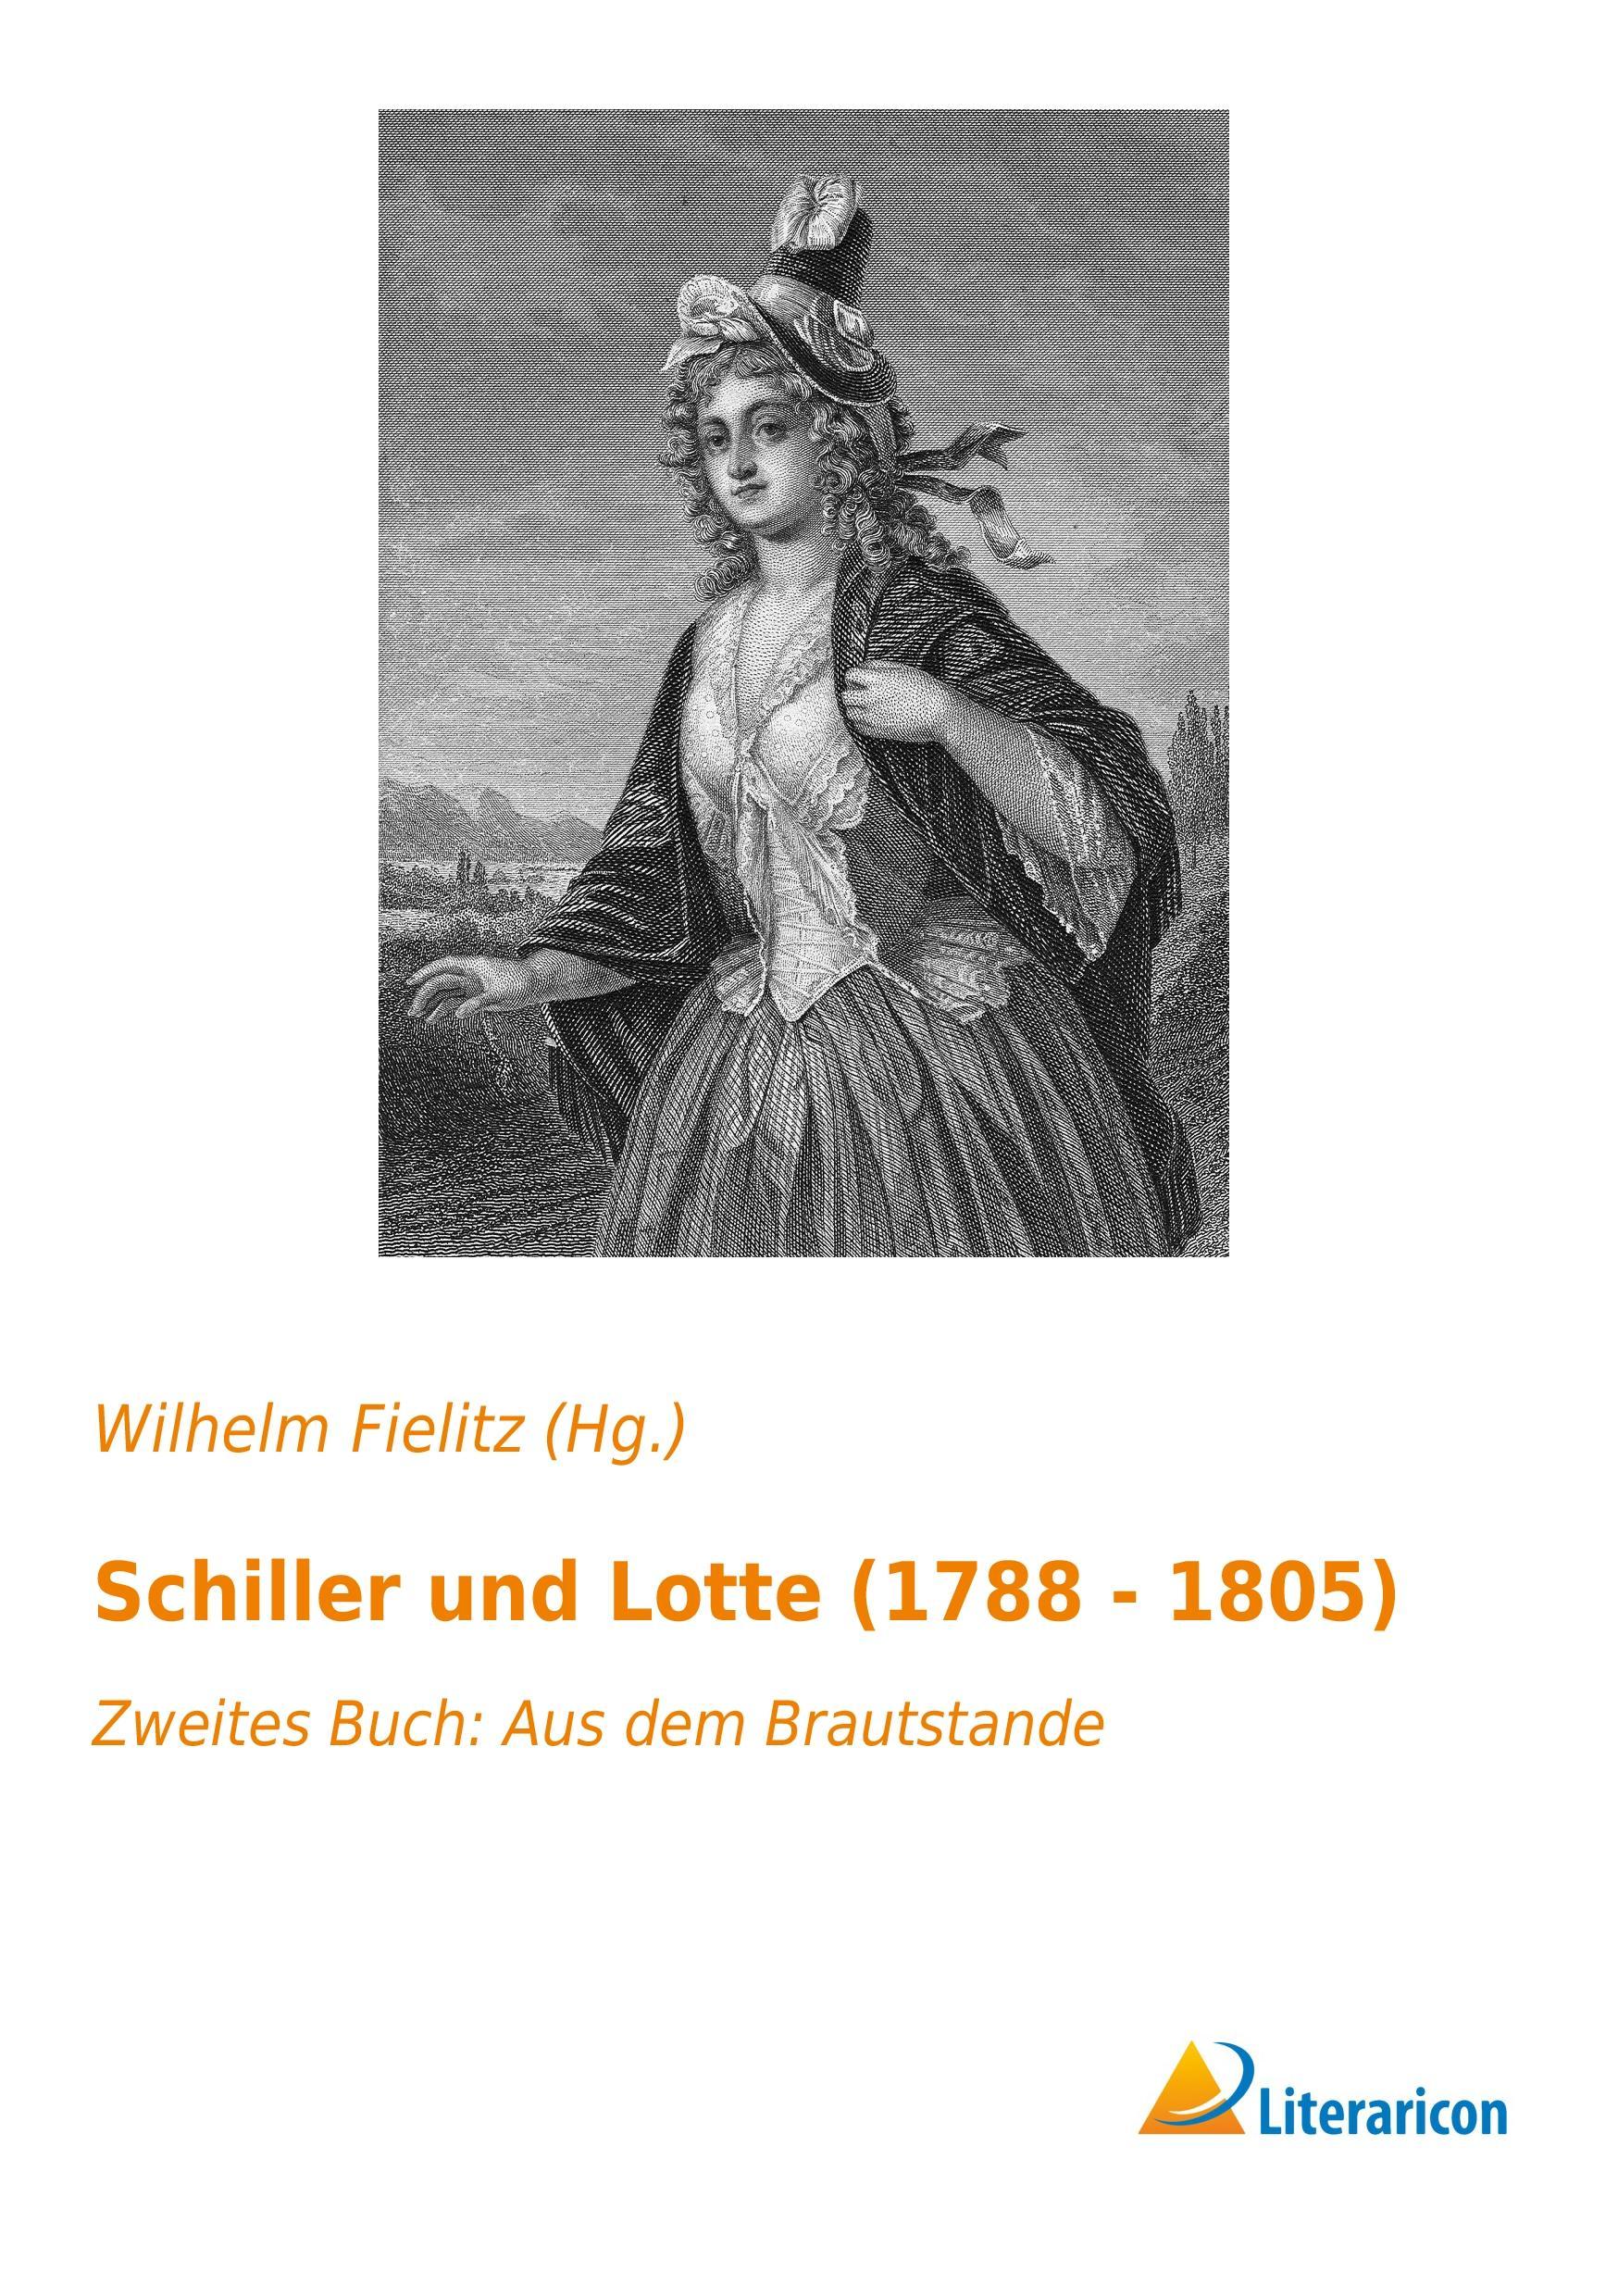 Schiller und Lotte (1788 - 1805) | Zweites Buch: Aus dem Brautstande | Wilhelm Fielitz (Hg. | Taschenbuch | Paperback | 328 S. | Deutsch | 2016 | Literaricon Verlag | EAN 9783956975875 - Fielitz (Hg., Wilhelm